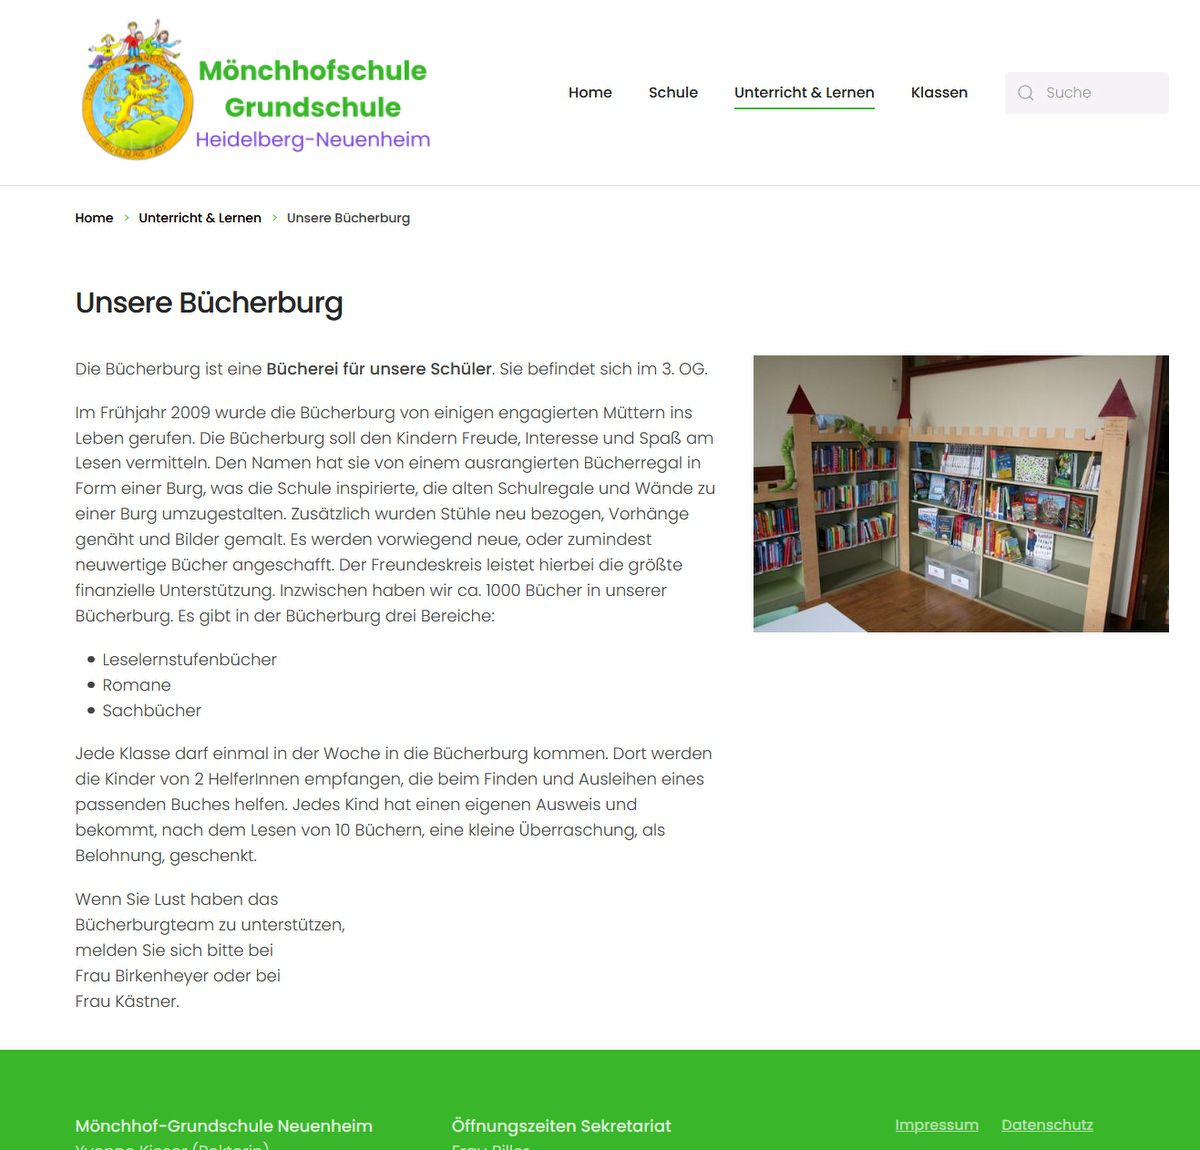 Mönchhofschule